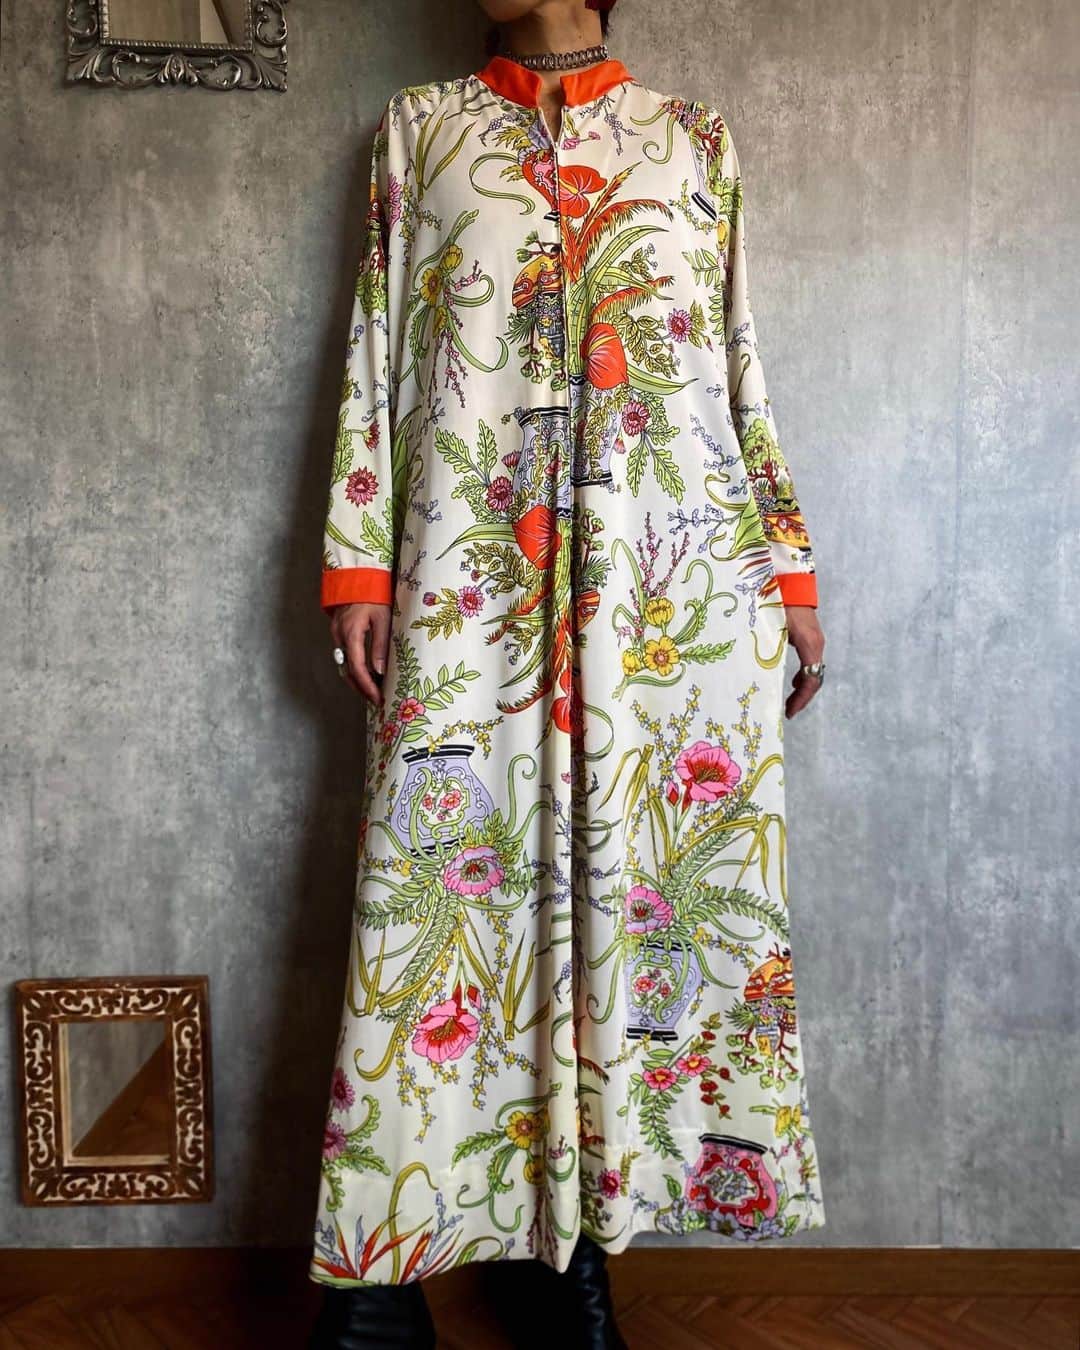 Chief used&vintageのインスタグラム：「Online Store New Arrival 🟠 “1970s USA Floral House Dress” オンラインストアにて販売中  ７０sらしいのピースフルな柄が素敵なヴィンテージドレス。 ホワイト×色彩豊かなボタニカルパターンが 秋冬でも軽やかで明るい印象に。 ひとつひとつの柄まで細やかに描写されており、 その世界観に思わず見入ってしまいます。  なだらかにAラインに広がる落ち感のあるシルエットで、 大人びた印象でご着用いただけるのも魅力的です。 詳細はタグ付けよりオンラインストアにお進み下さい。  ※オンラインストアご注文分の 次回発送日は10/11(水)となります。 あらかじめご了承の上、ご利用くださいませ。」